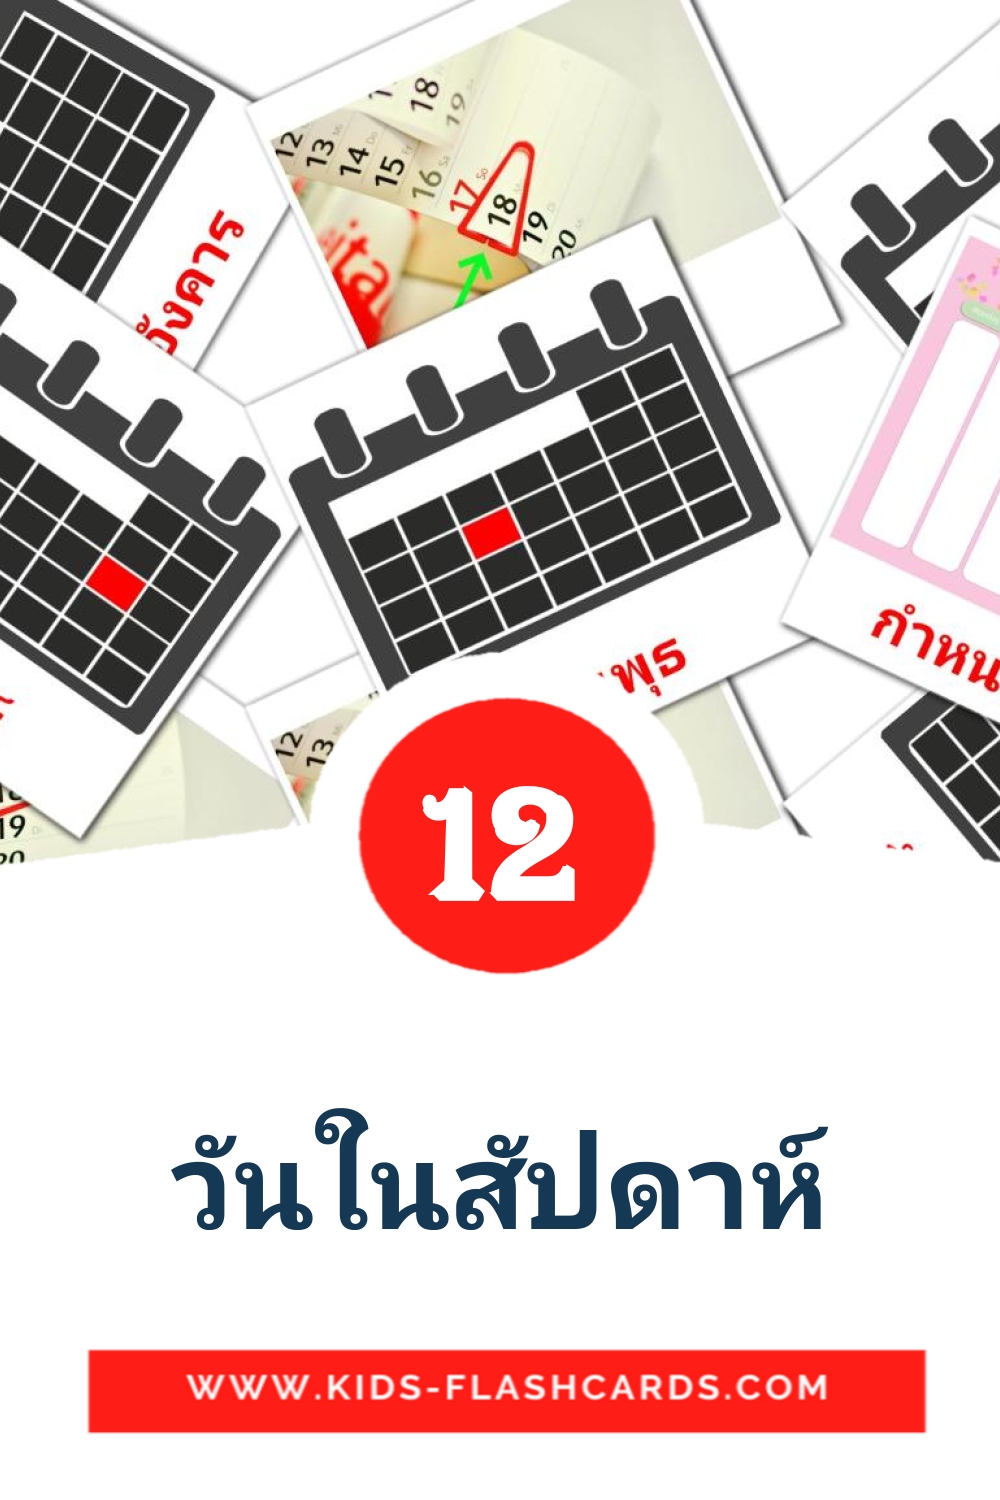 12 วันในสัปดาห์ fotokaarten voor kleuters in het thais